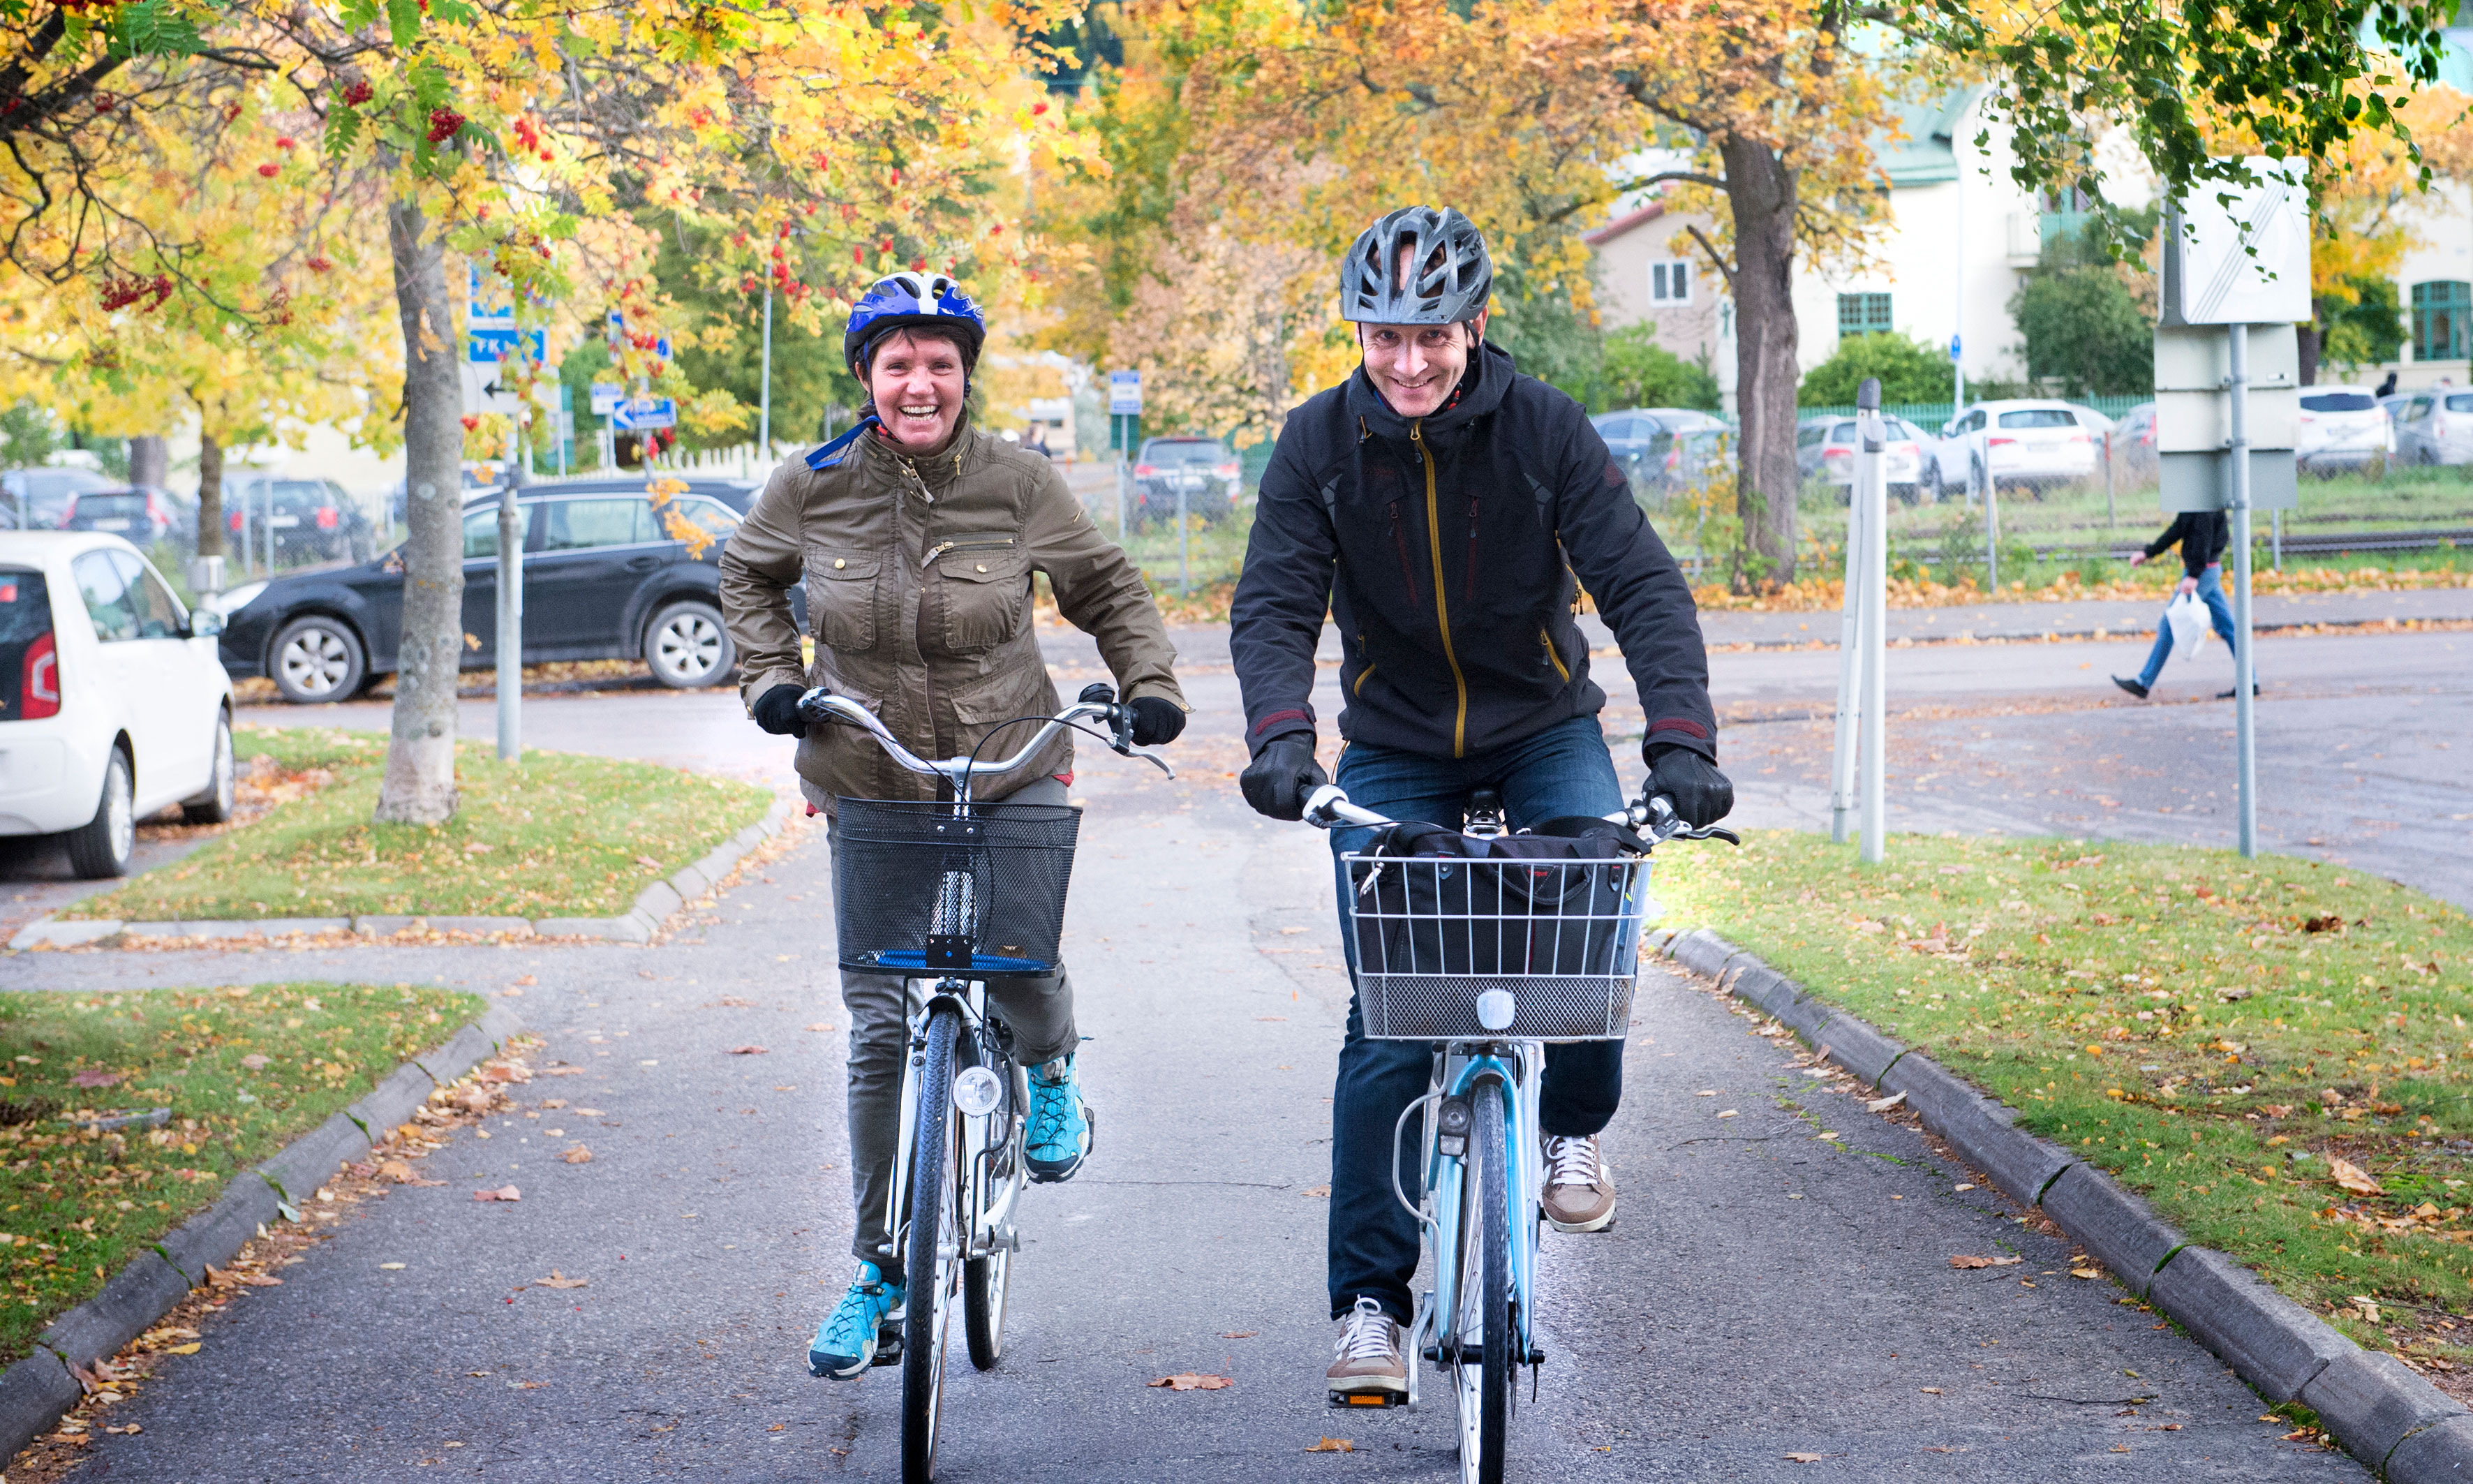 Huvudskyddsombudet Eva Forsberg hör till dem som gärna bokar en av Statens tjänstepensionsverks cyklar. Fredrik Sundqvist kan stoltsera med titeln cykelinspiratör. ”Det handlar om att driva cyklingens intresse på arbetsplatsen”, förklarar han.